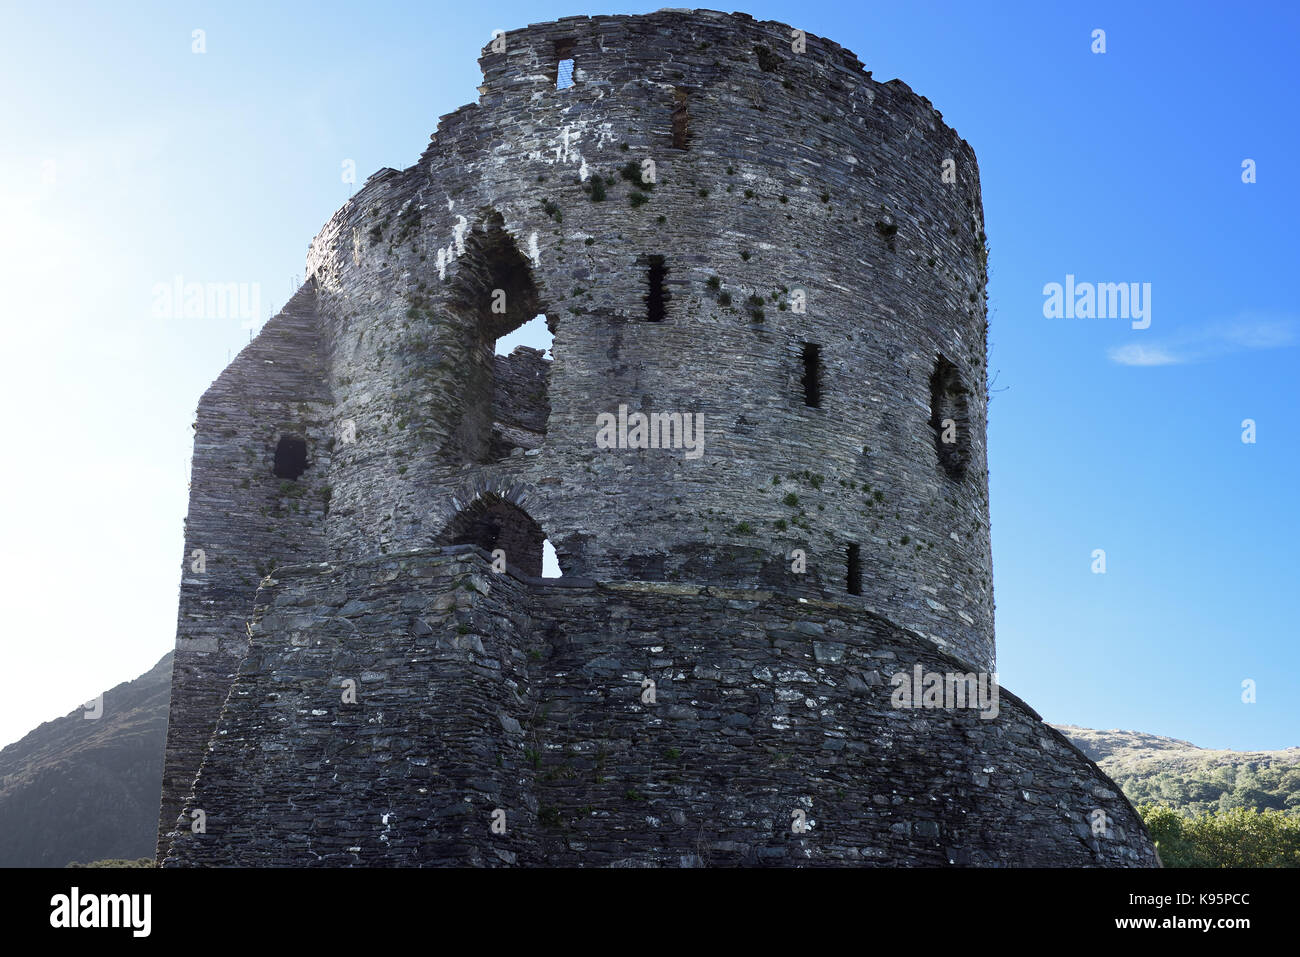 Dolbadarn Castle, vicino a Llanberis in Galles del Nord, è stato costruito agli inizi del XIII secolo dal principe gallese noto come Llywelyn il grande. Foto Stock